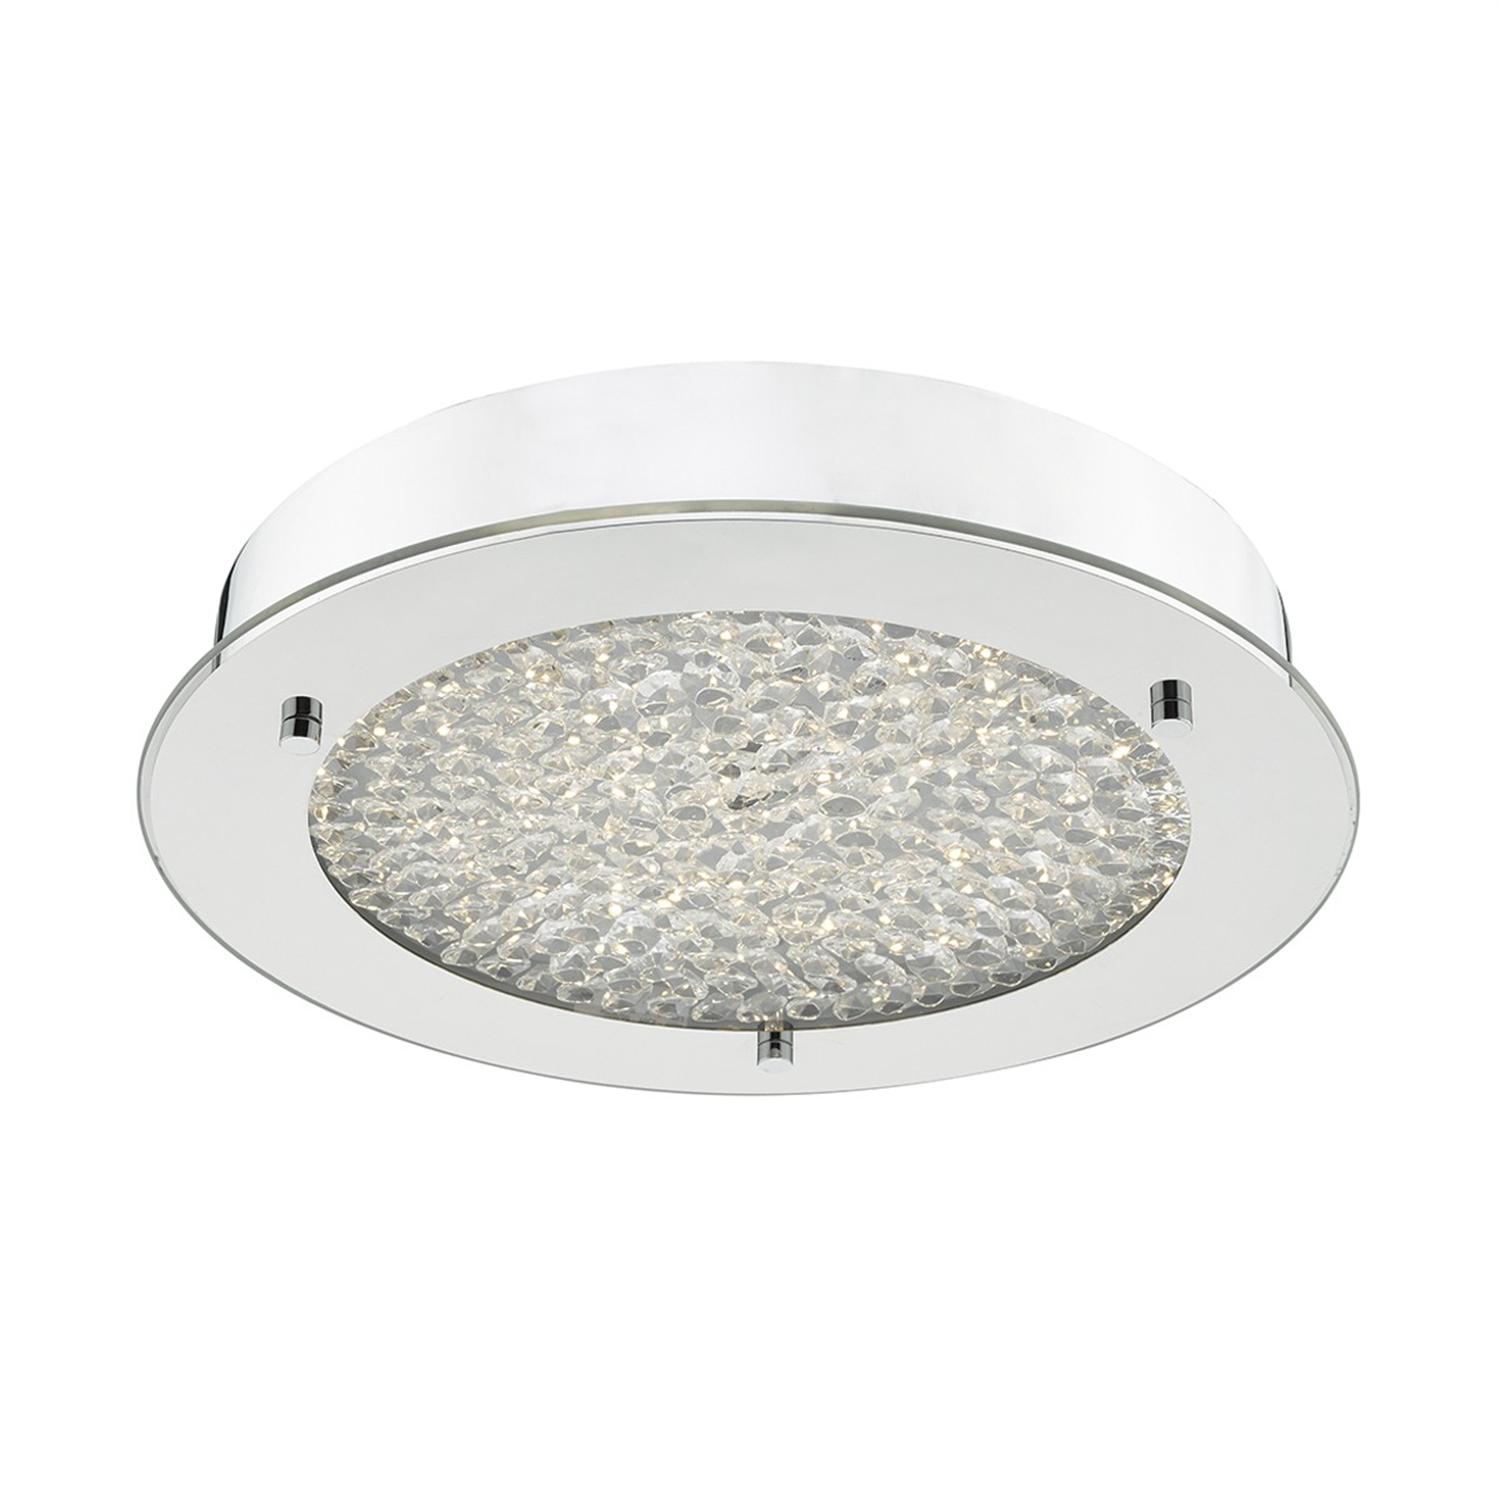 Pet5250 Peta Led Semi Flush Bathroom Ceiling Light 9413 